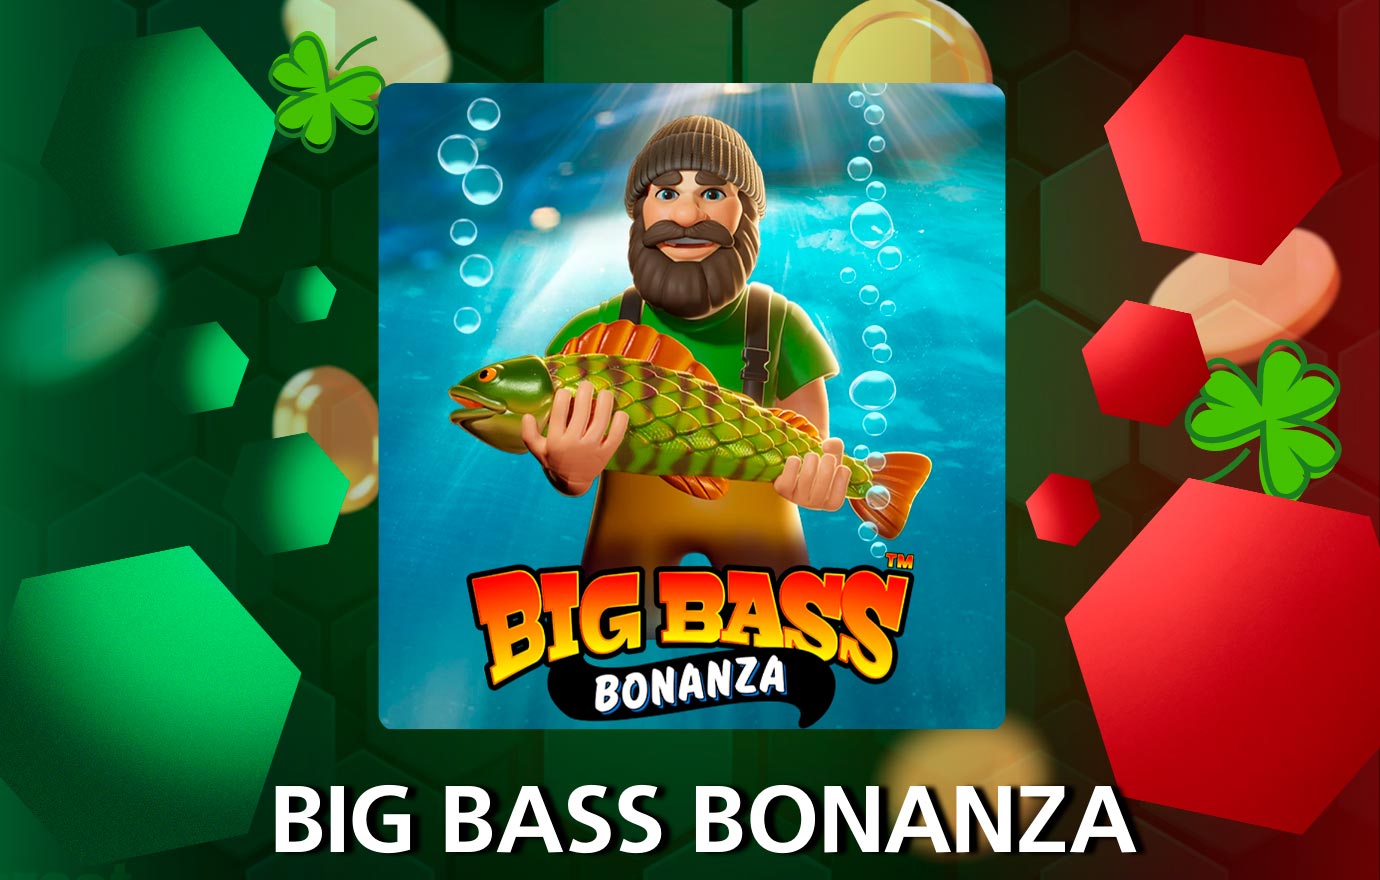 Big Bass Bonanza es una video tragamonedas popular en Codere Casino